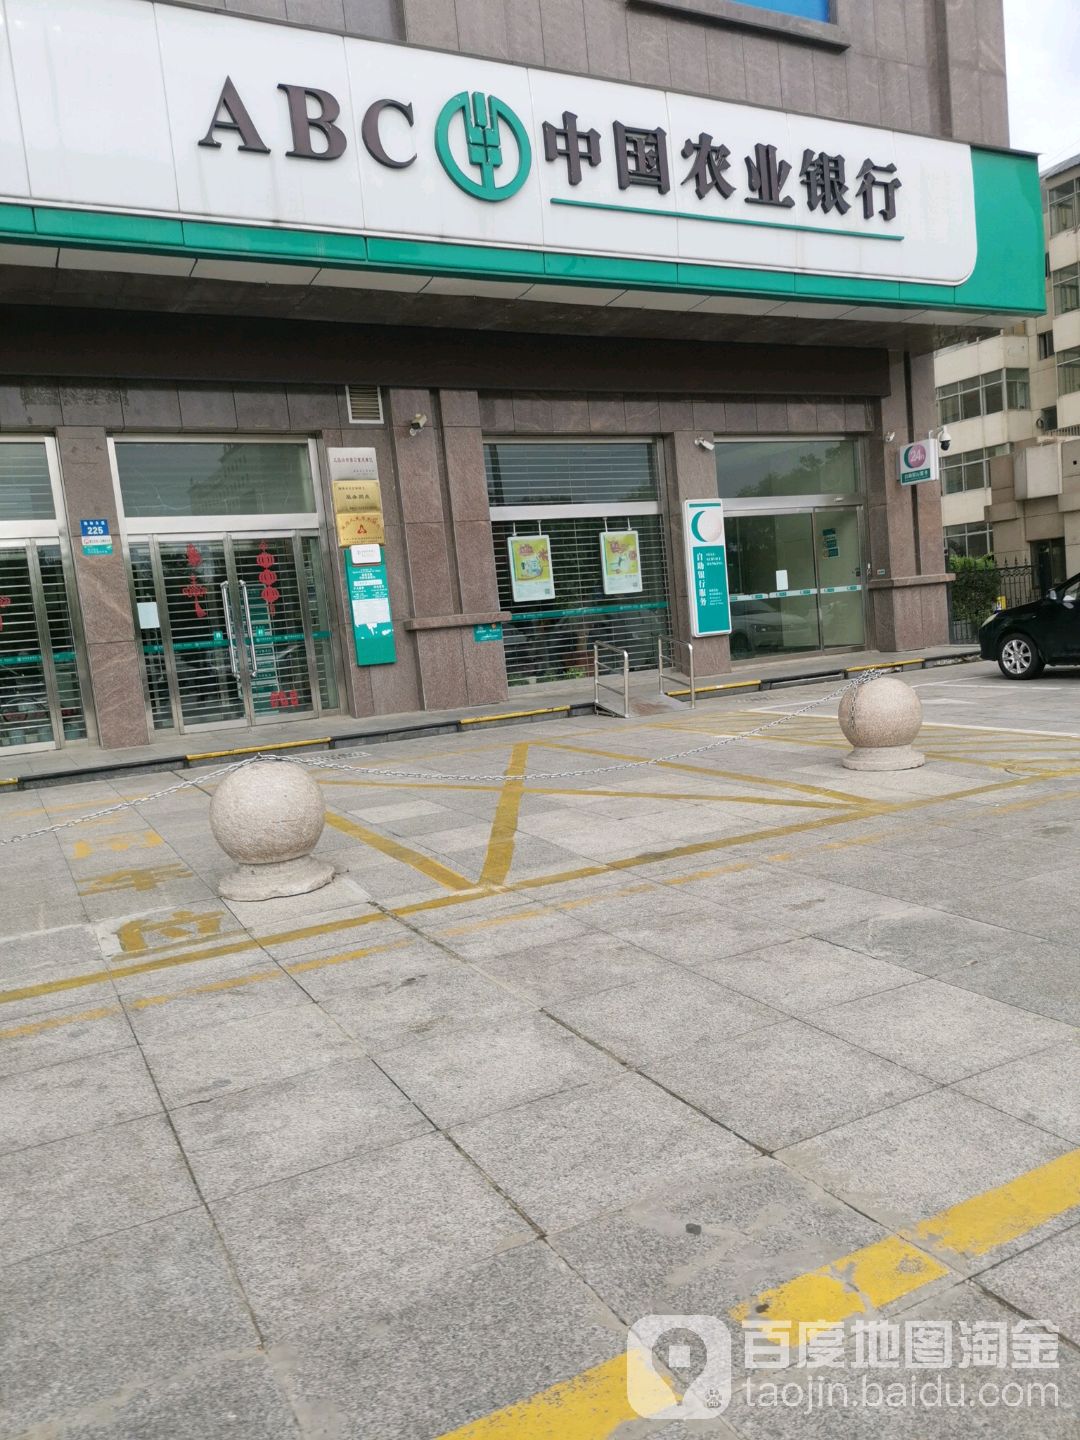 中國農業銀行24小時自助銀行(榆林文化路支行)